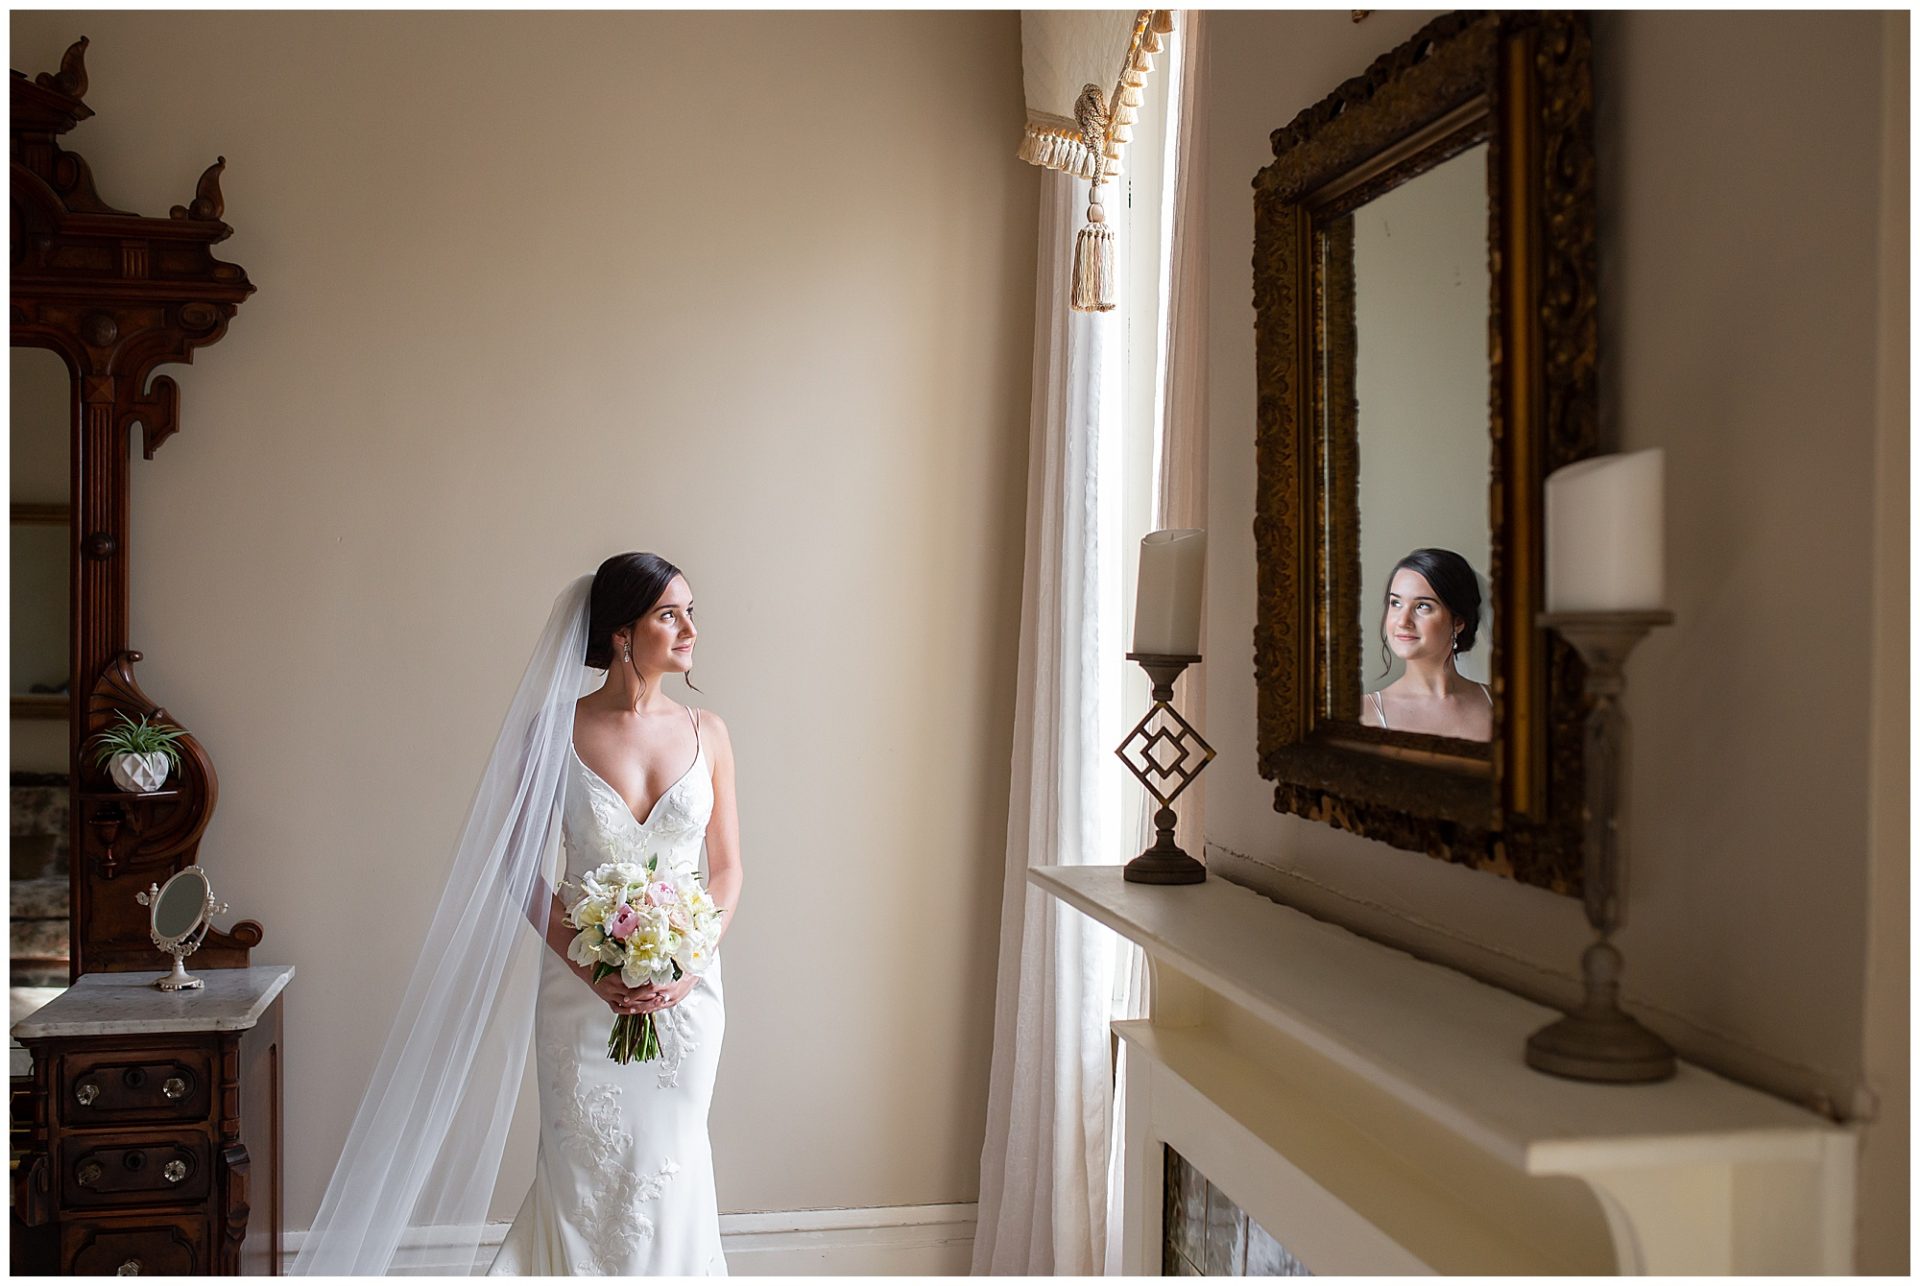 bridal portrait session at riverwood mansion in nashville, elegant and sophisticated bridal session